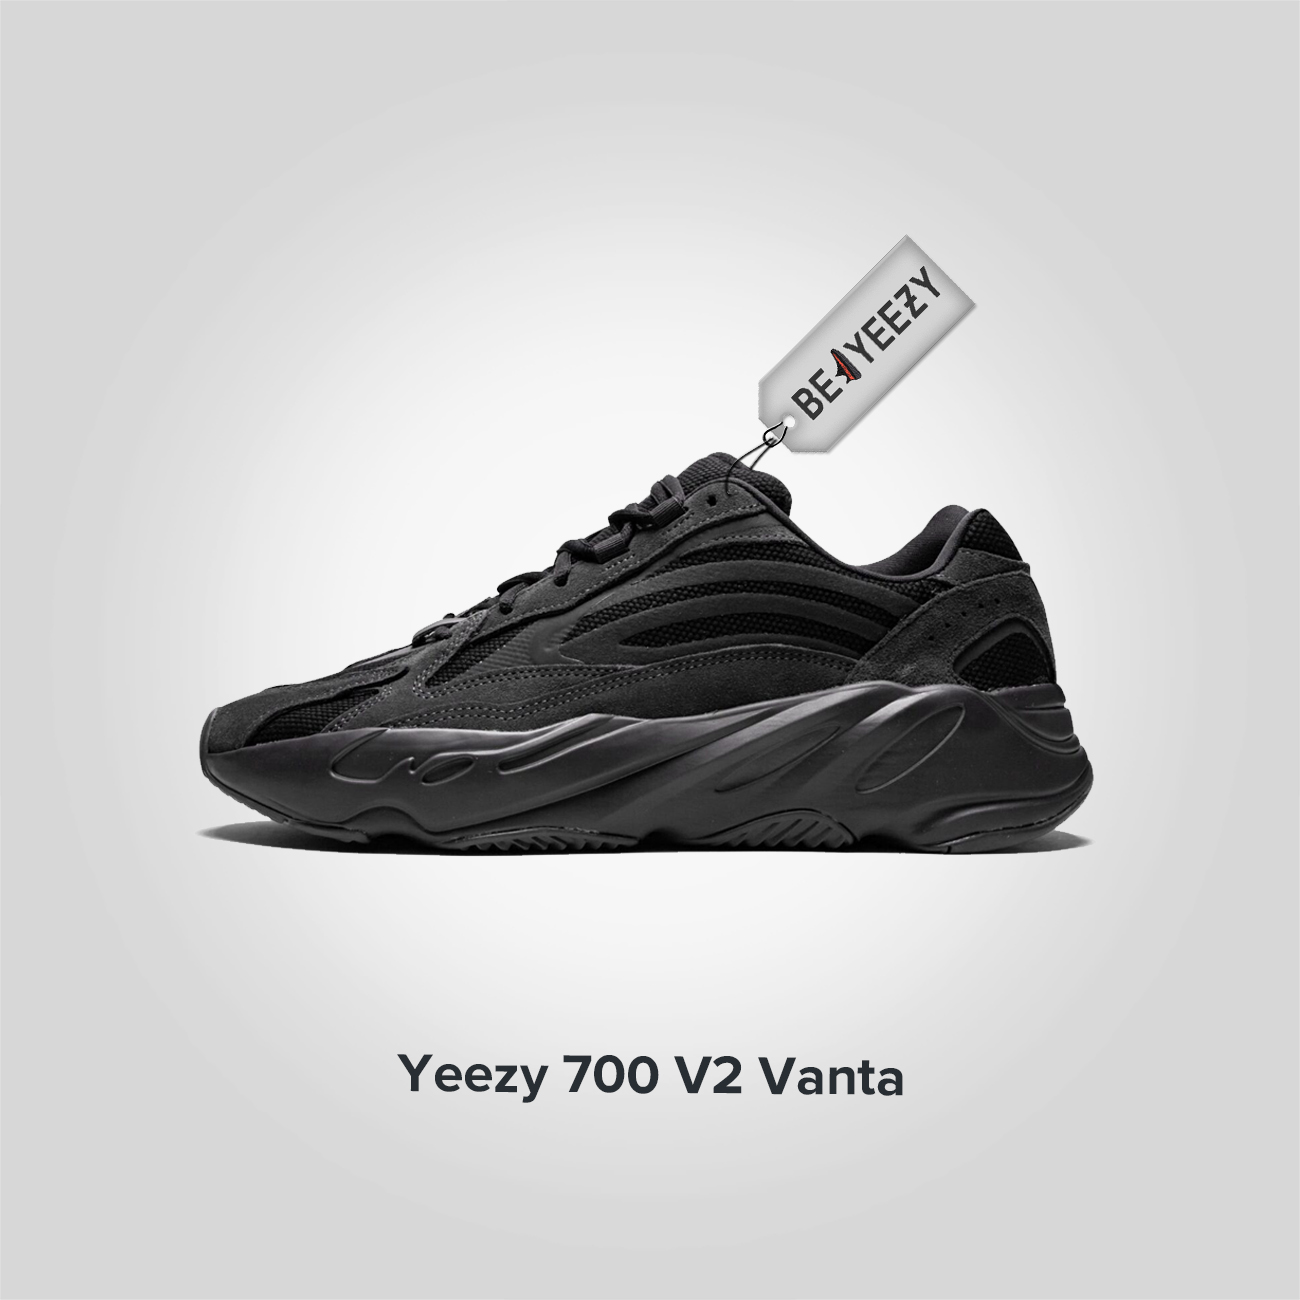 Yeezy Boost 700 V2 Vanta